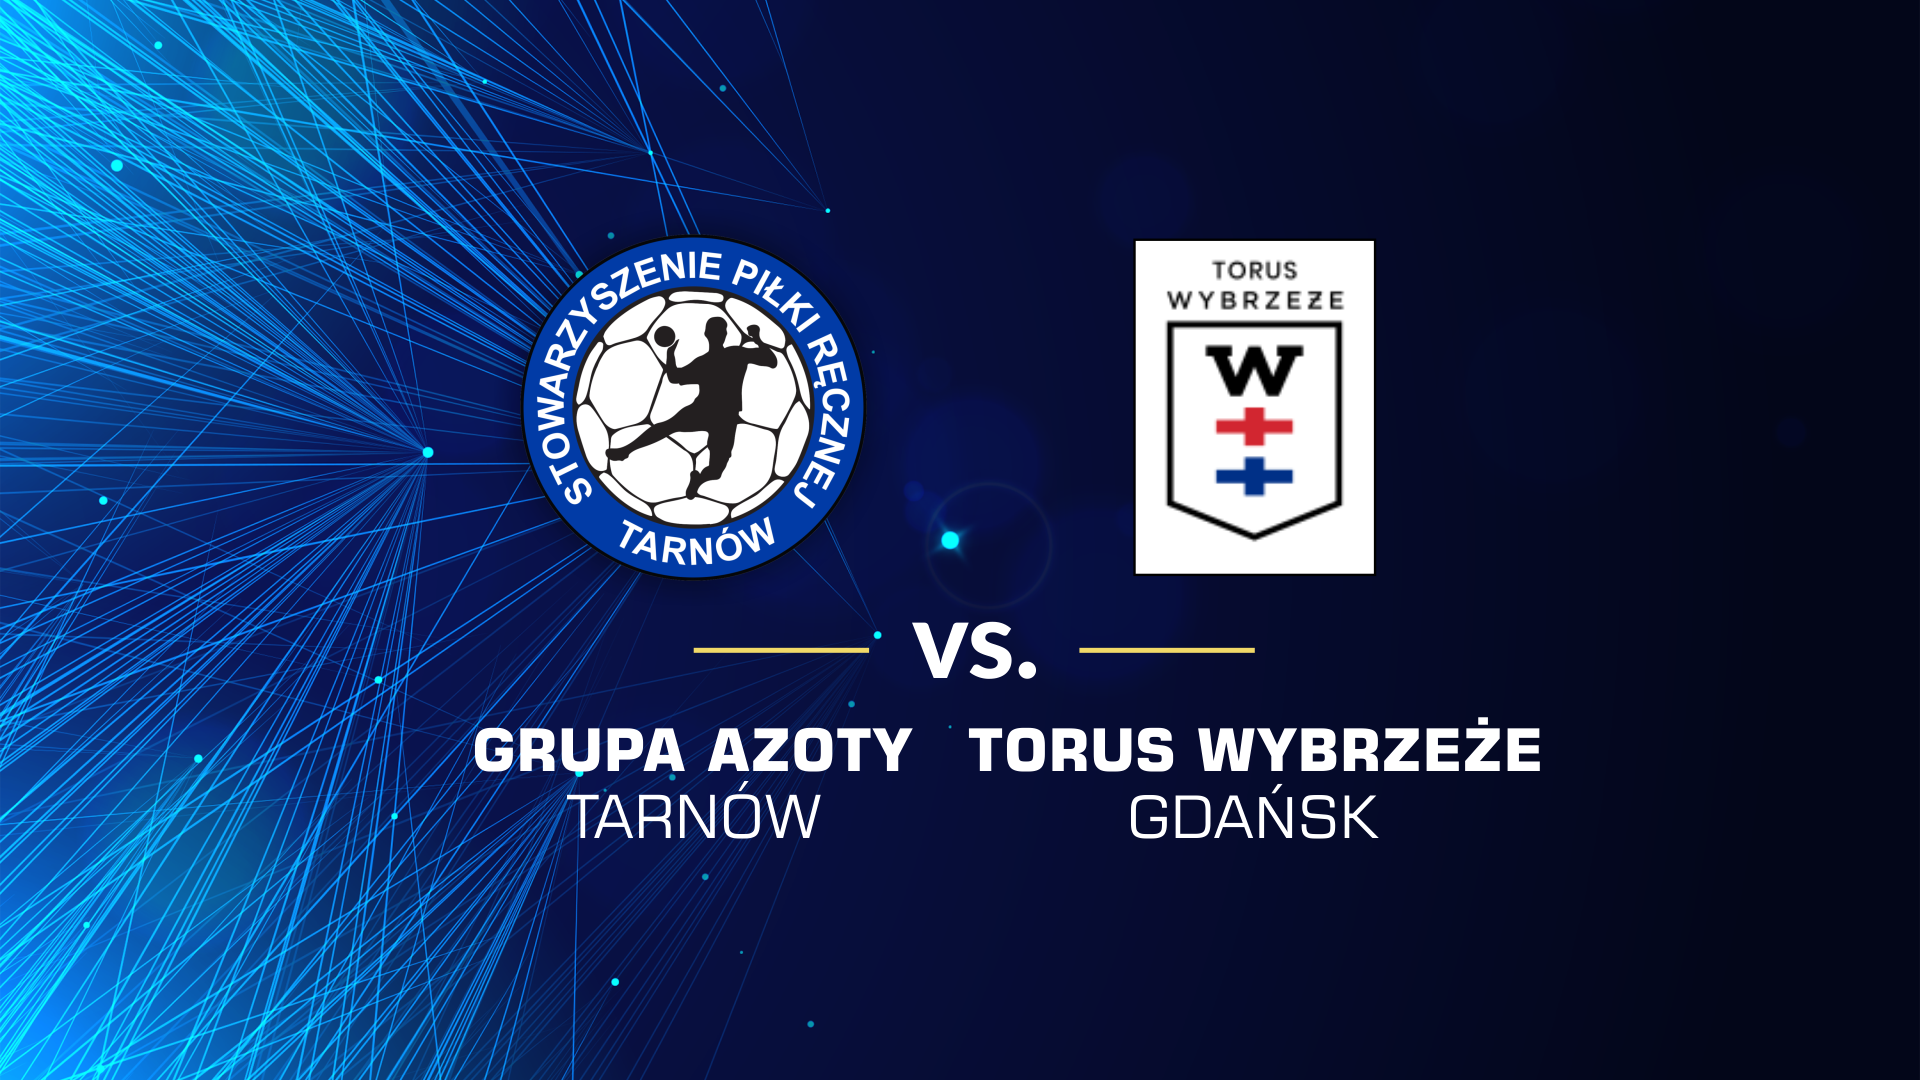 baner promujący mecz z Torus Wybrzeżem Gdańsk